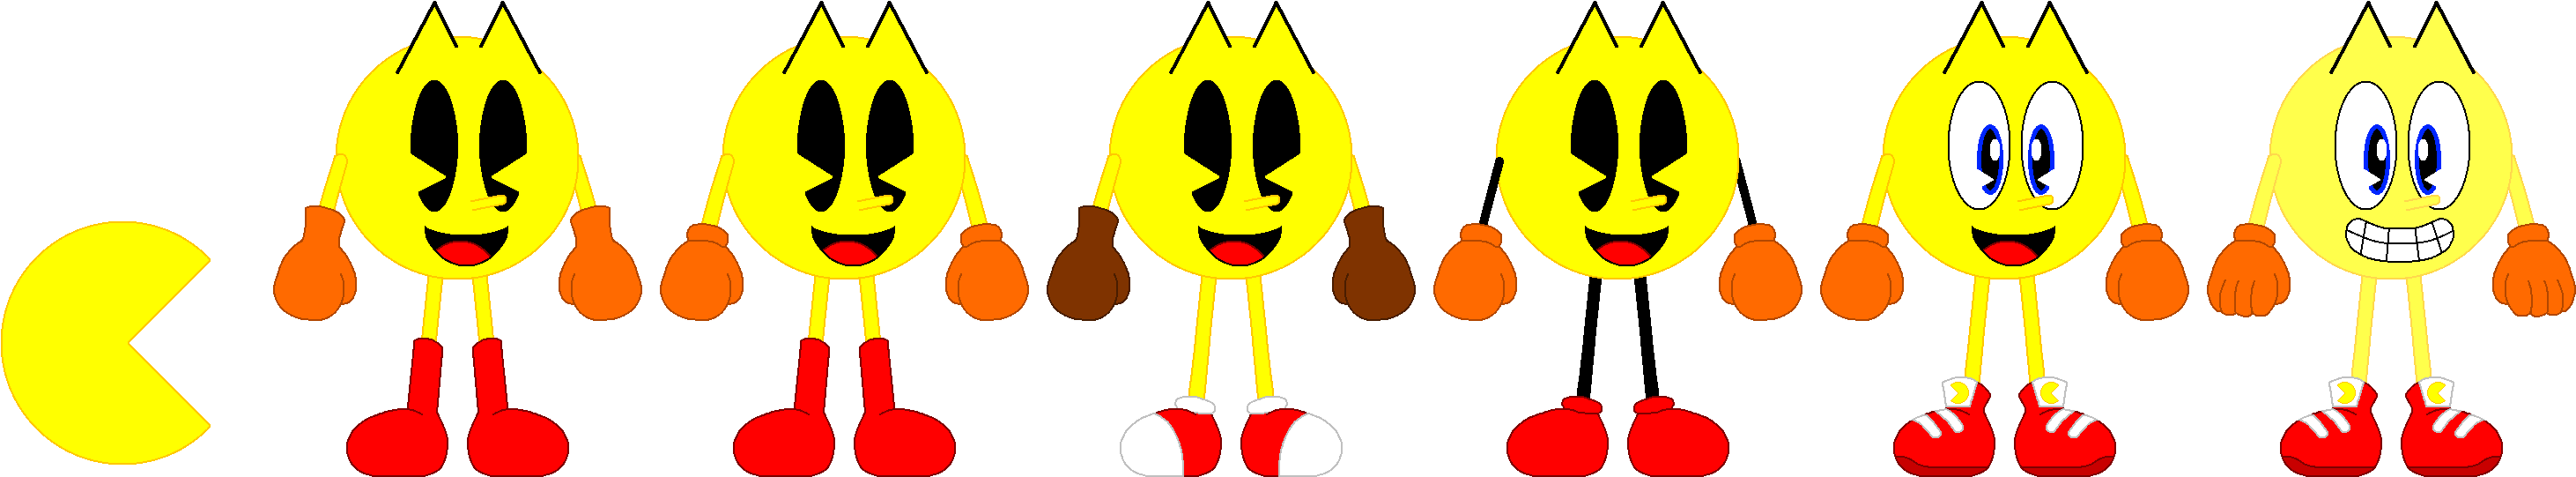 Pac Man Variations By Cheezn64x Pac Man Variations - Pac-man (3050x600)